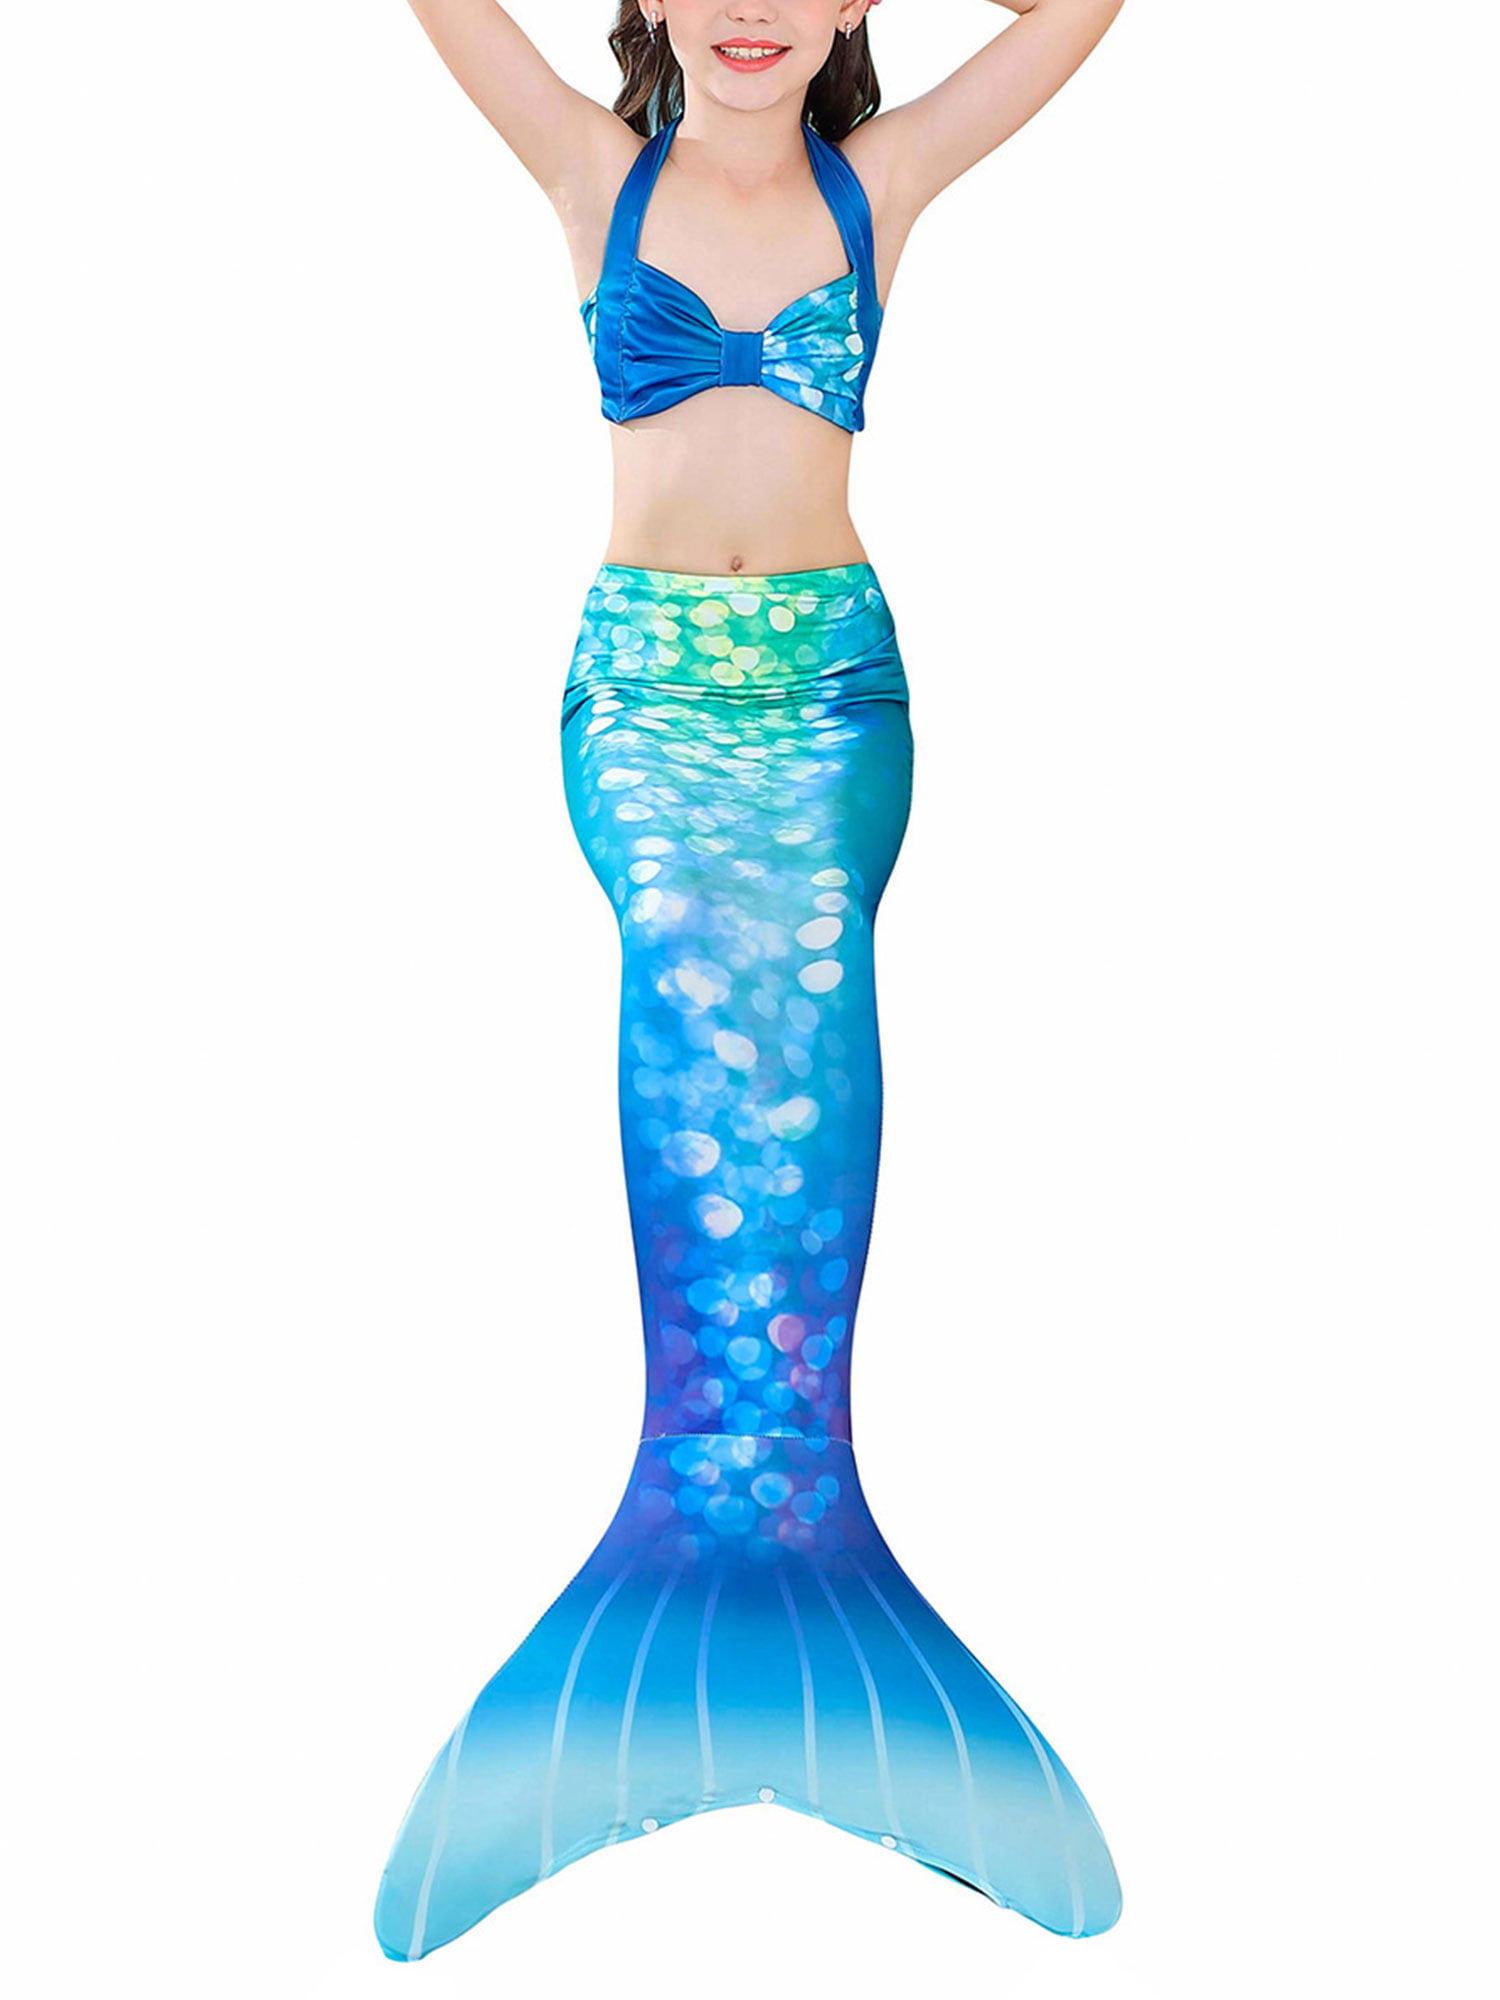 Mermaid Swimsuit for Kids Girls Swimwear Costume Swimming Bikini+Shorts+Tail Set 